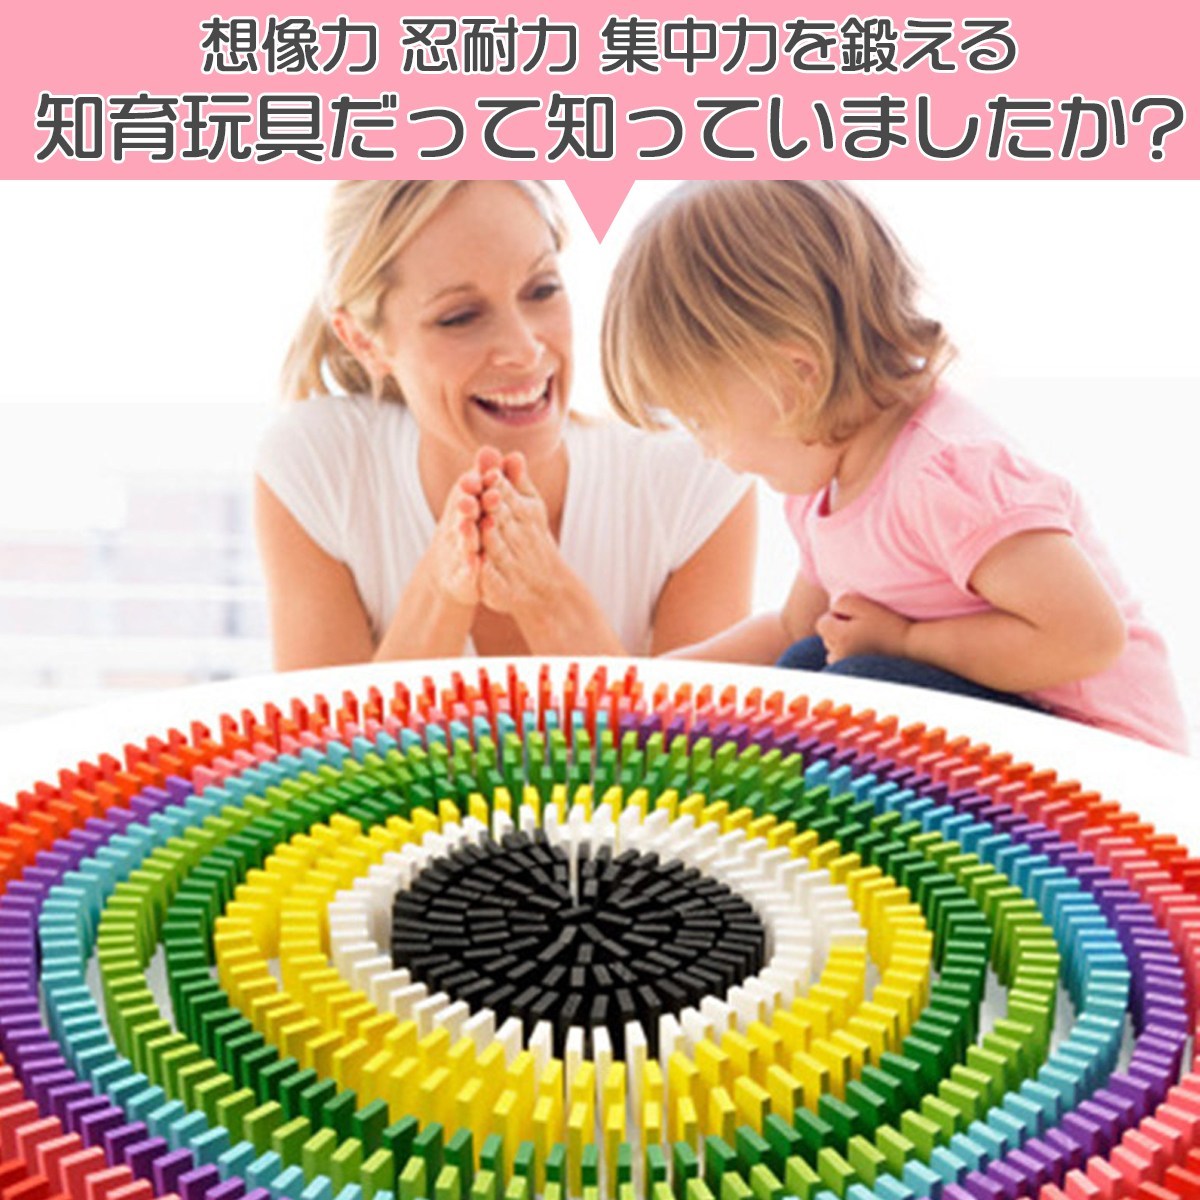 【1320ピース】12色 ドミノ おもちゃ 積み木 知育 玩具 木製 カラフル_画像3